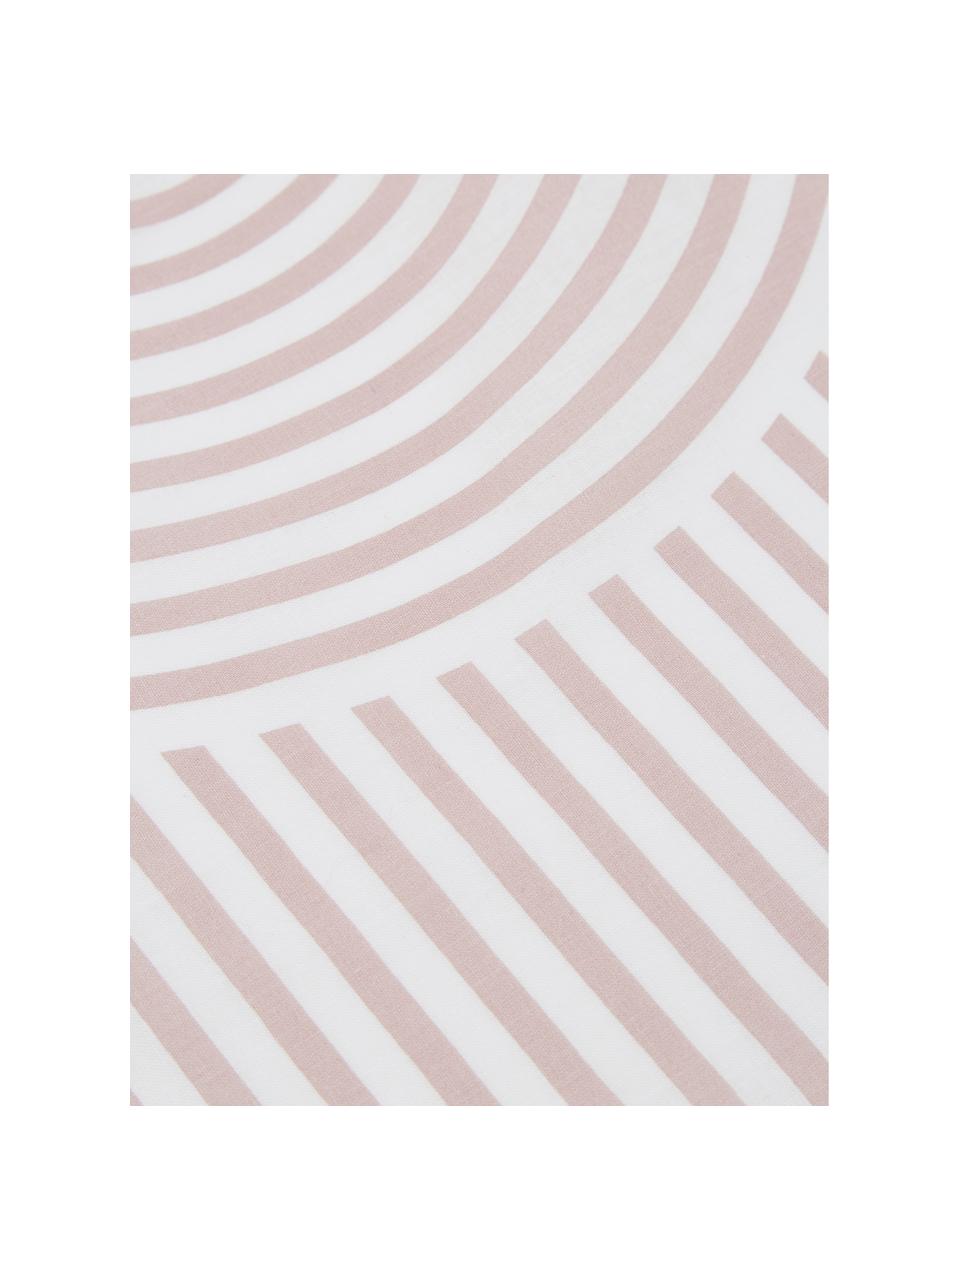 Gemusterte Baumwoll-Kopfkissenbezüge Arcs in Altrosa/Weiß, 2 Stück, Webart: Renforcé Fadendichte 144 , Rosa,Weiß, 40 x 80 cm